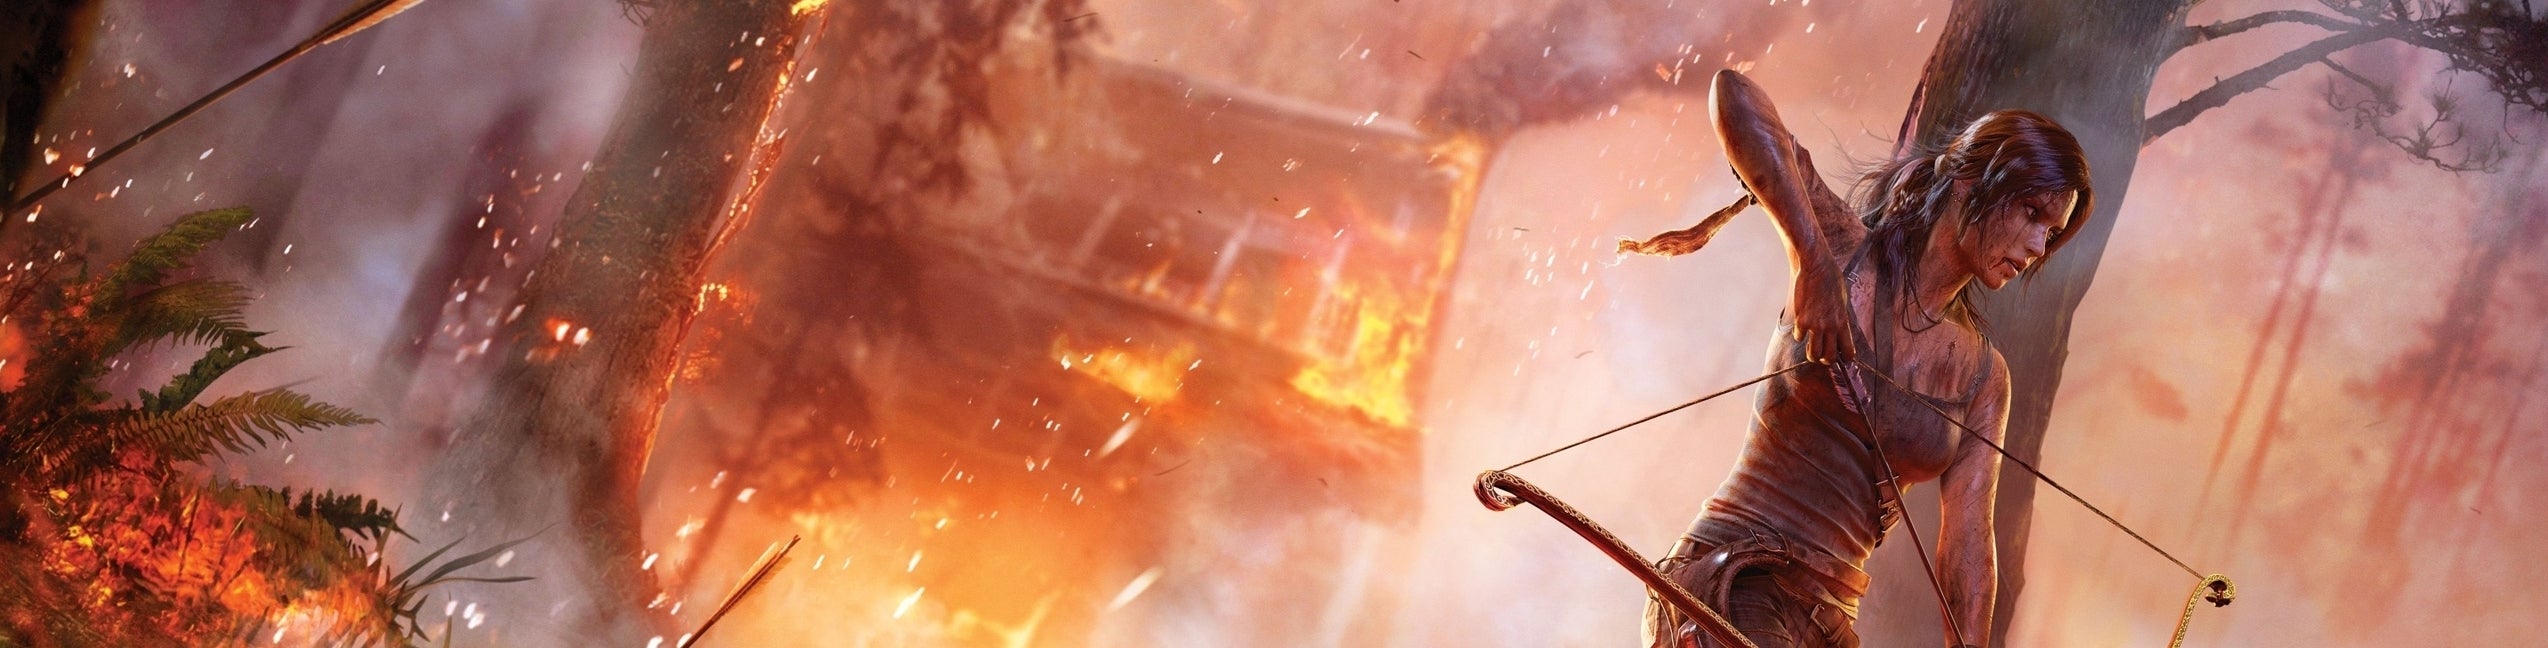 Afbeeldingen van Creative director van Tomb Raider naar 343 Industries